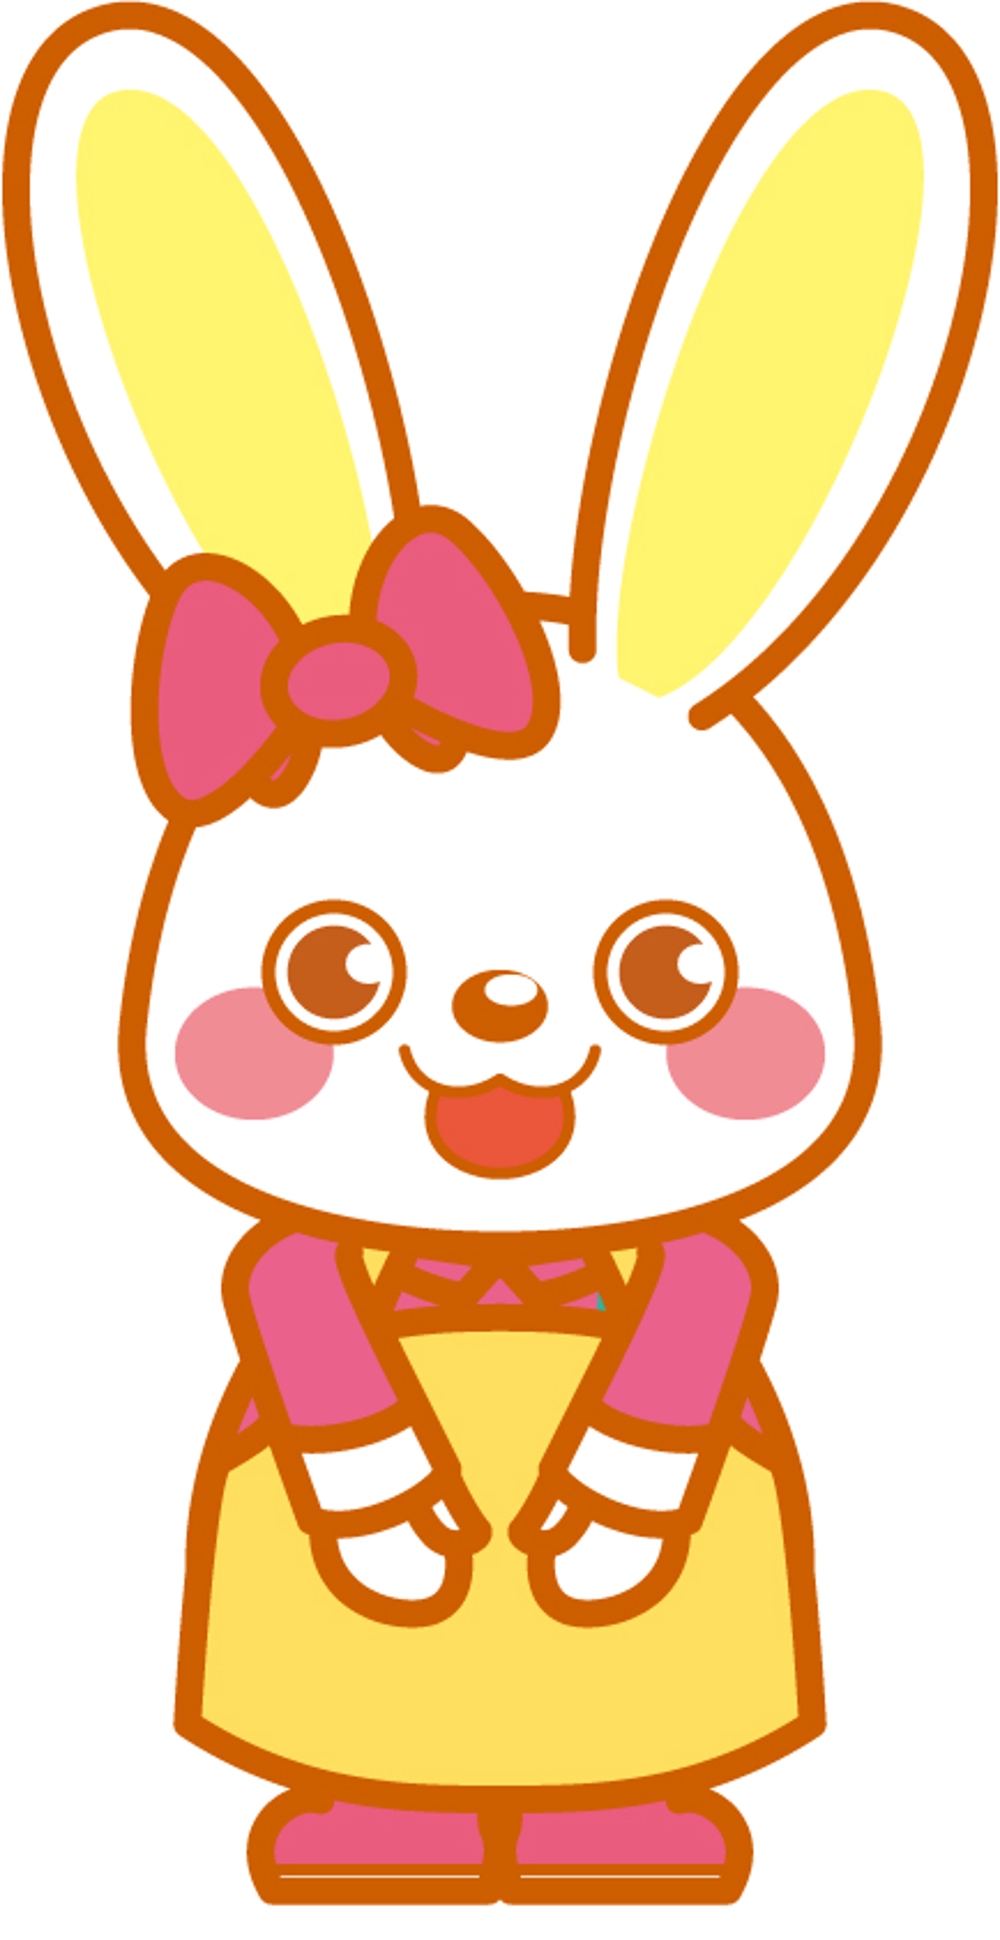 ウサギのキャラクターデザイン01.jpg